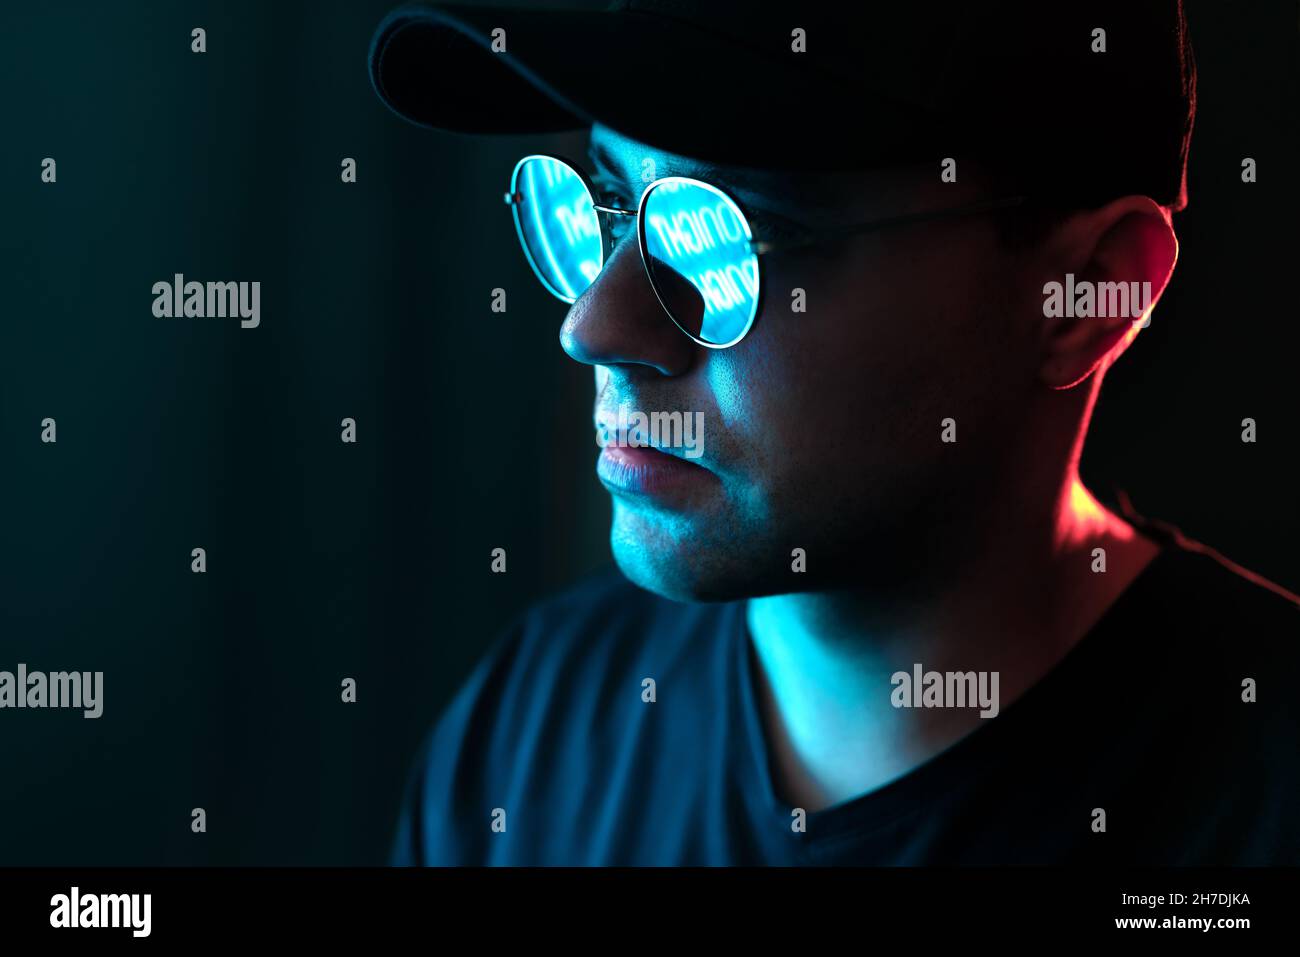 Mann mit Neonlicht auf Brille und Gesicht. Blaue und rote Farbe von der Stadt-Plakatwand im dunklen Studioportrait. Spiegelung in Sonnenbrillen. Schwarzer Hintergrund. Stockfoto